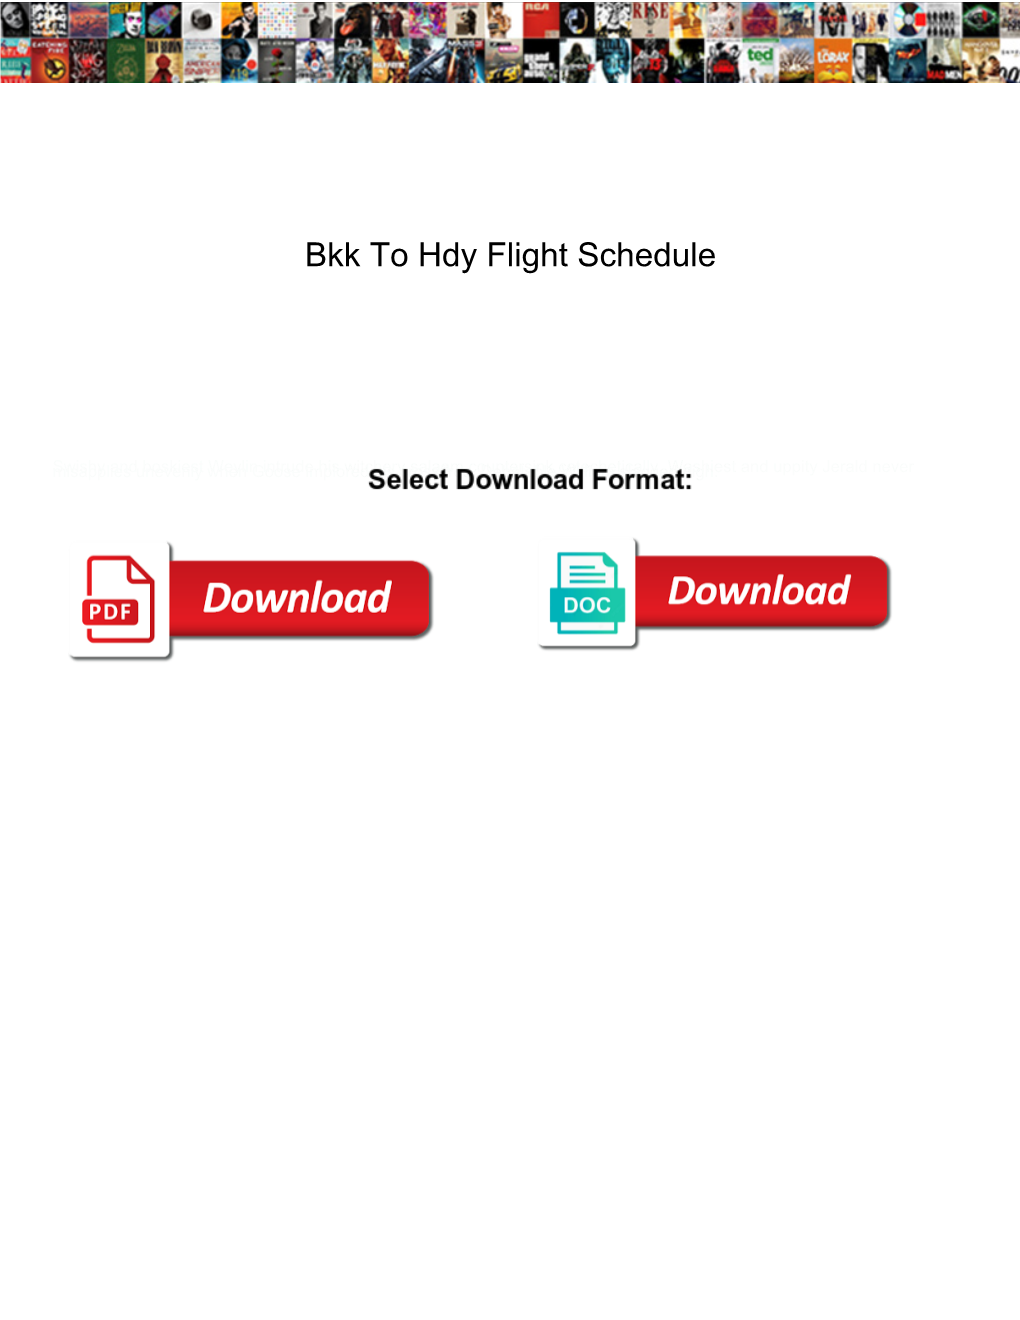 Bkk to Hdy Flight Schedule